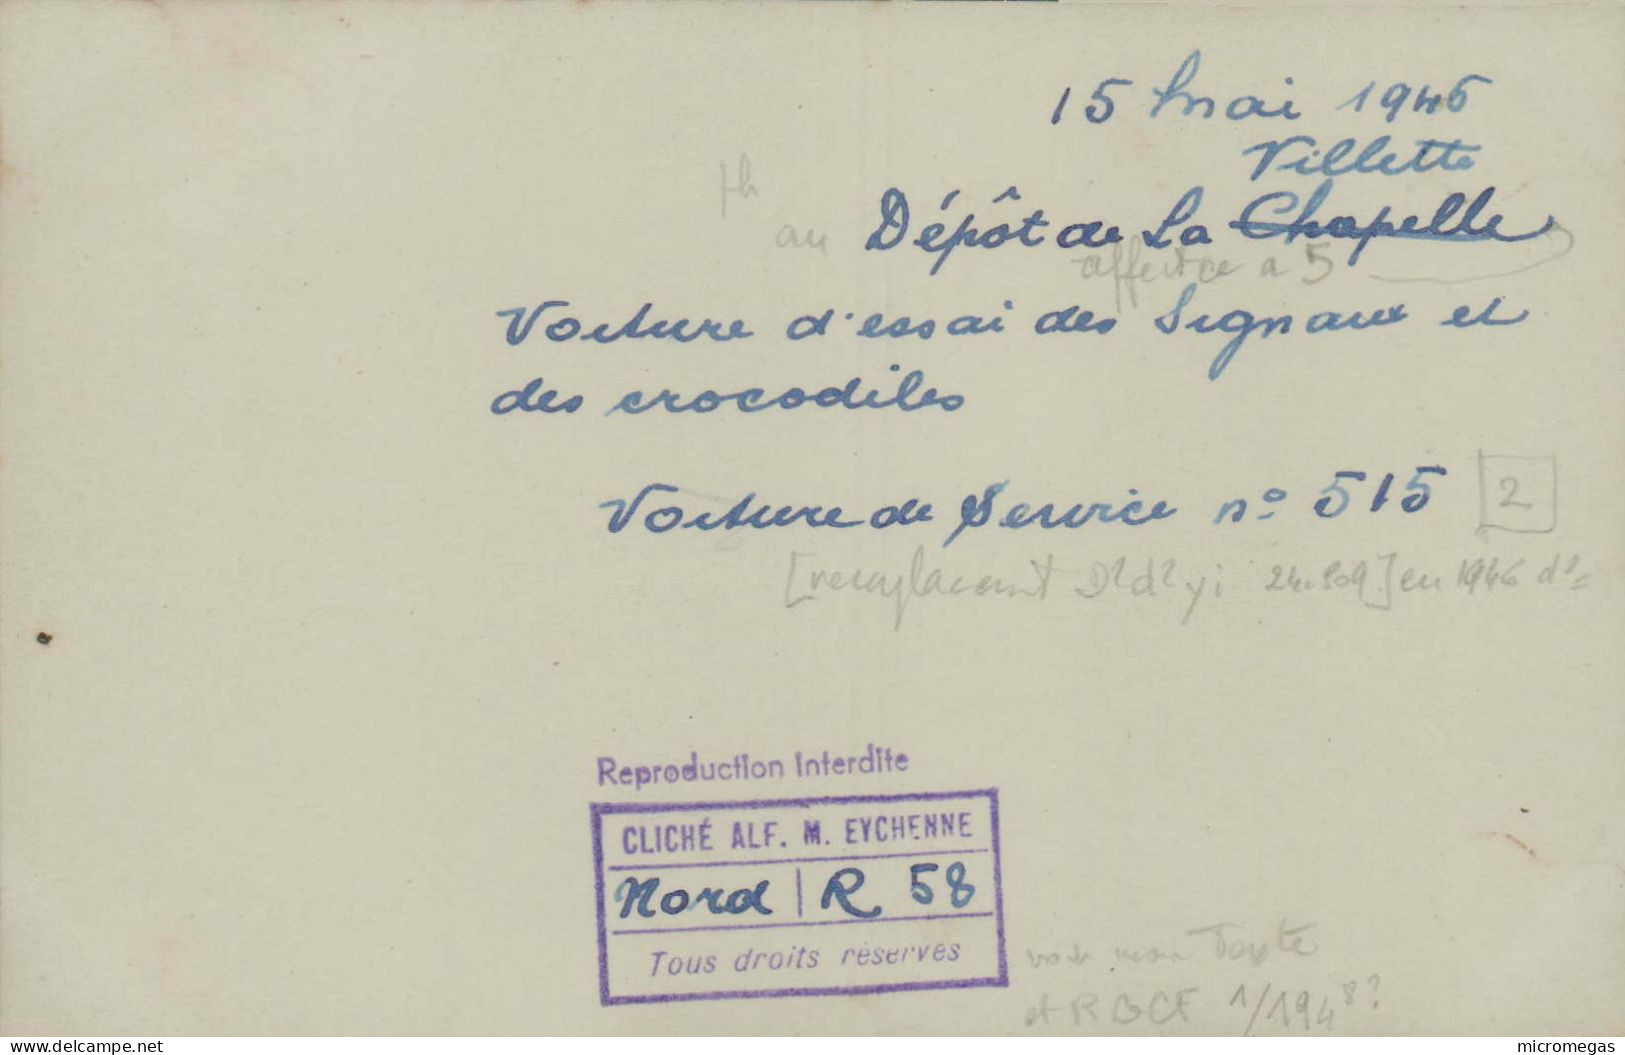 15 Mai 1946, Villette - Dépôt De La Chapelle - Voiture D'essai Des Signaux Et Des Crocodiles  - Cliché Alf. M. Eychenne - Trains